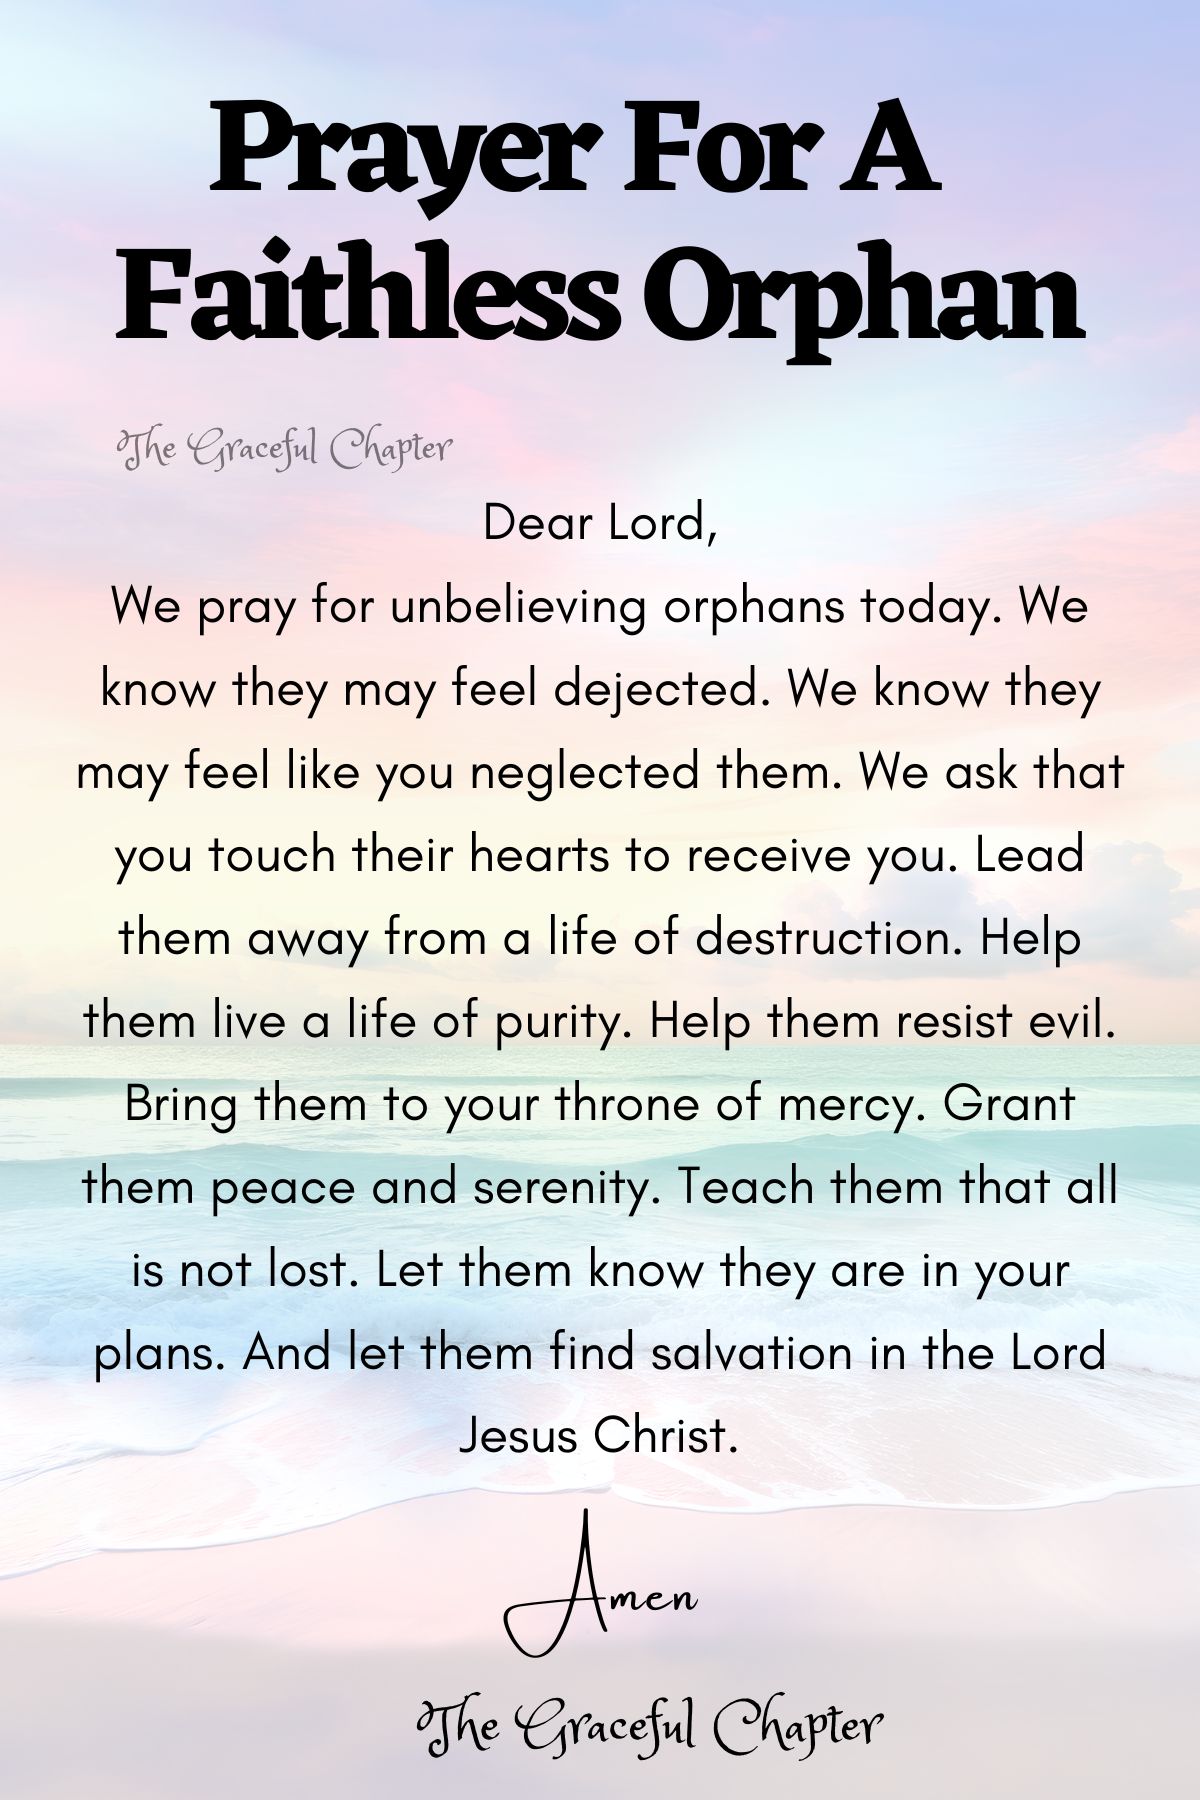 Prayer for a faithless orphan